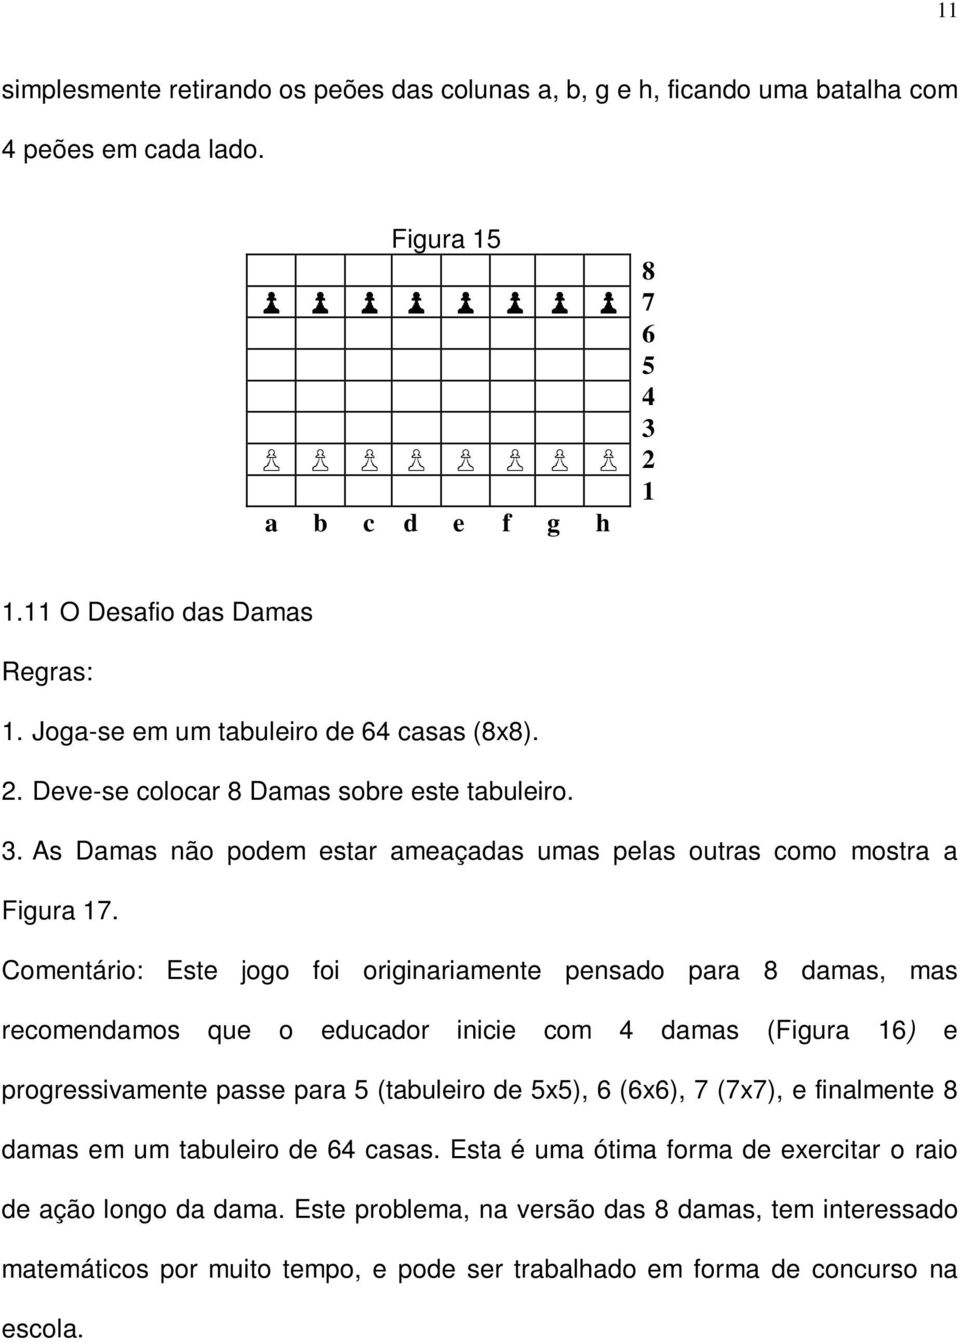 Comentário: Este jogo foi originariamente pensado para 8 damas, mas recomendamos que o educador inicie com 4 damas (Figura 16) e progressivamente passe para 5 (tabuleiro de 5x5), 6 (6x6), 7 (7x7),